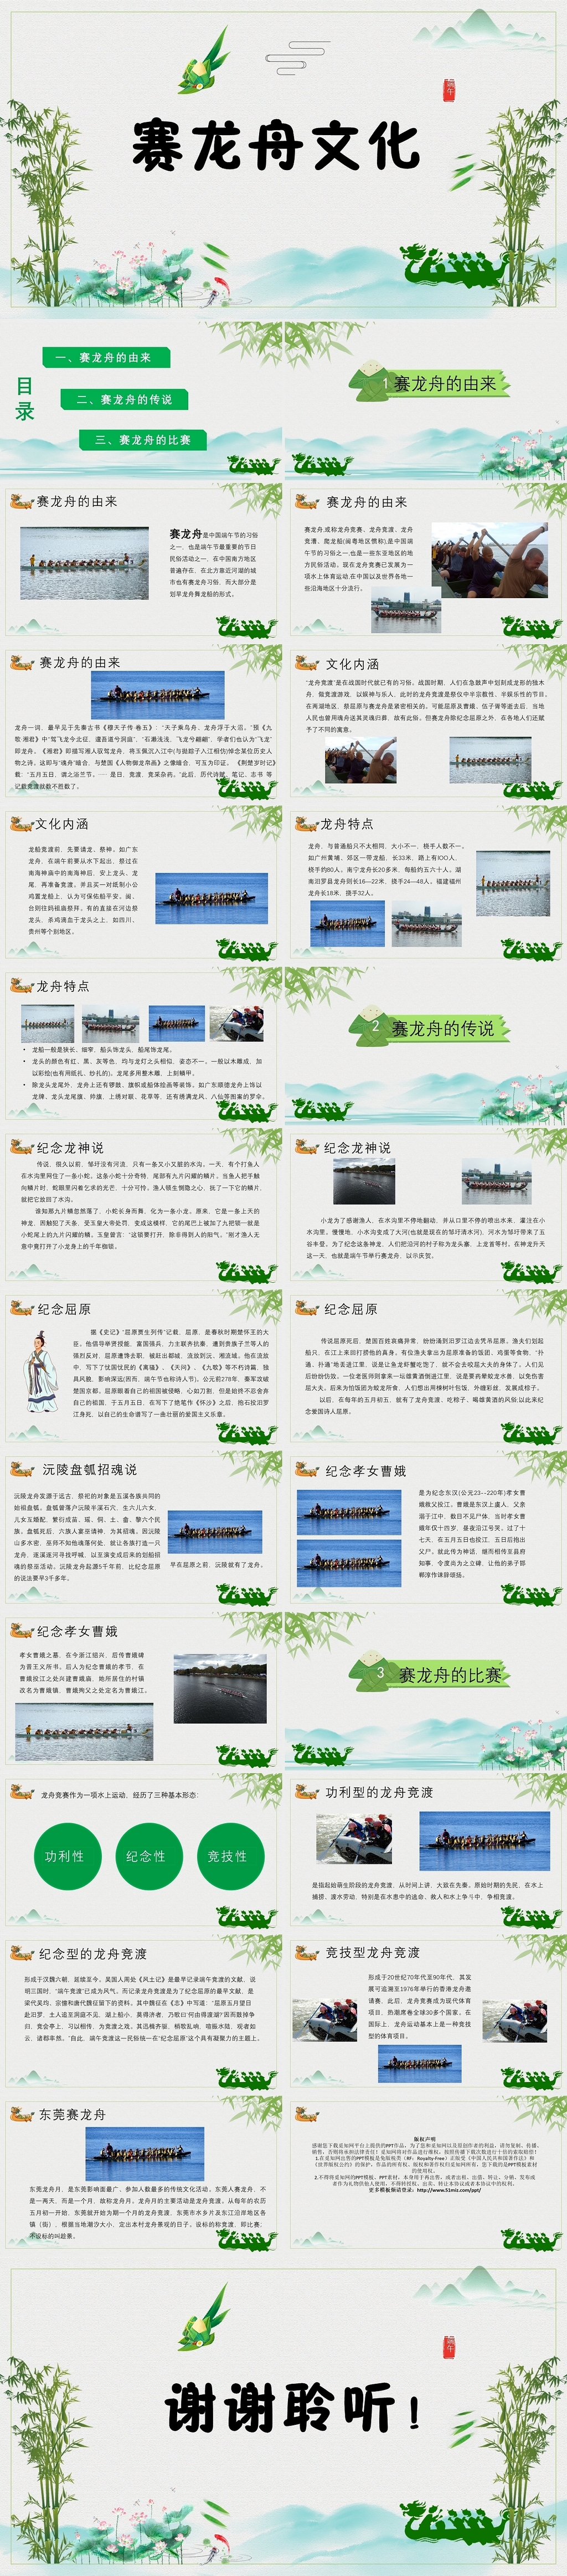 绿色清新端午节赛龙舟文化节日庆典ppt模板端午节